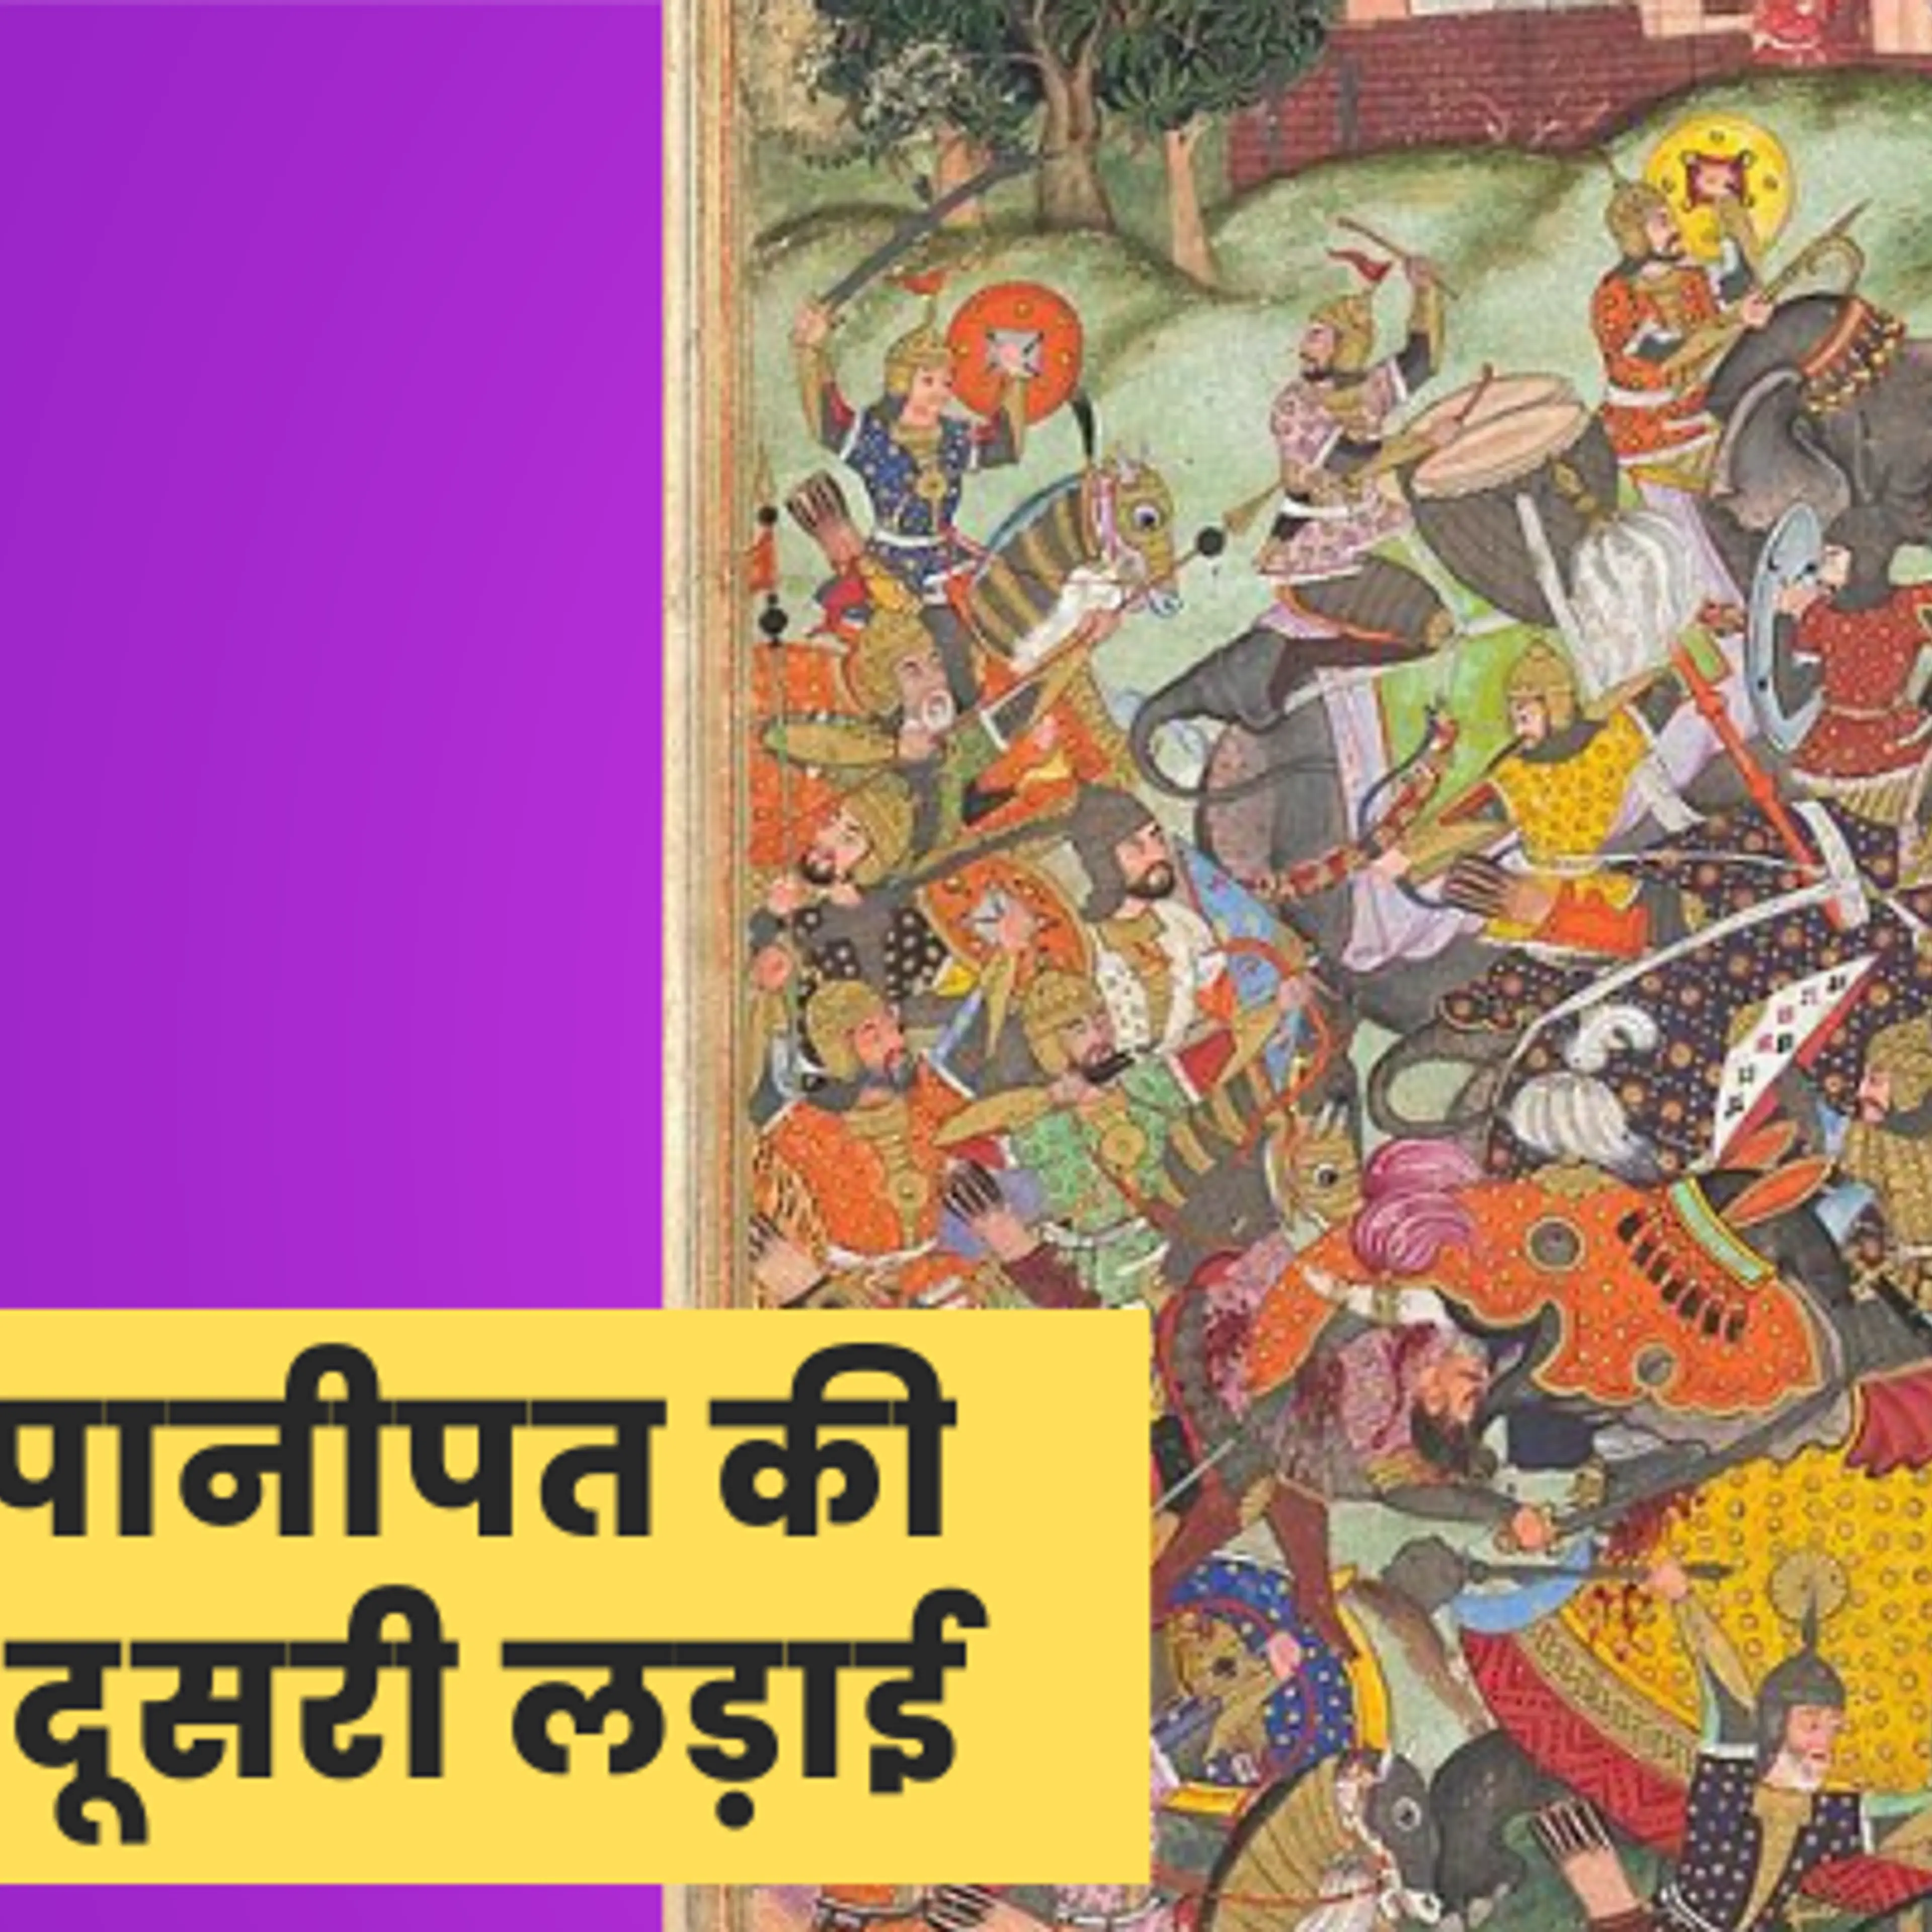 पानीपत की दूसरी लड़ाई, जिसने अगले 300 सालों के लिए हिंदुस्‍तान में मुगल शासन की नींव रखी  